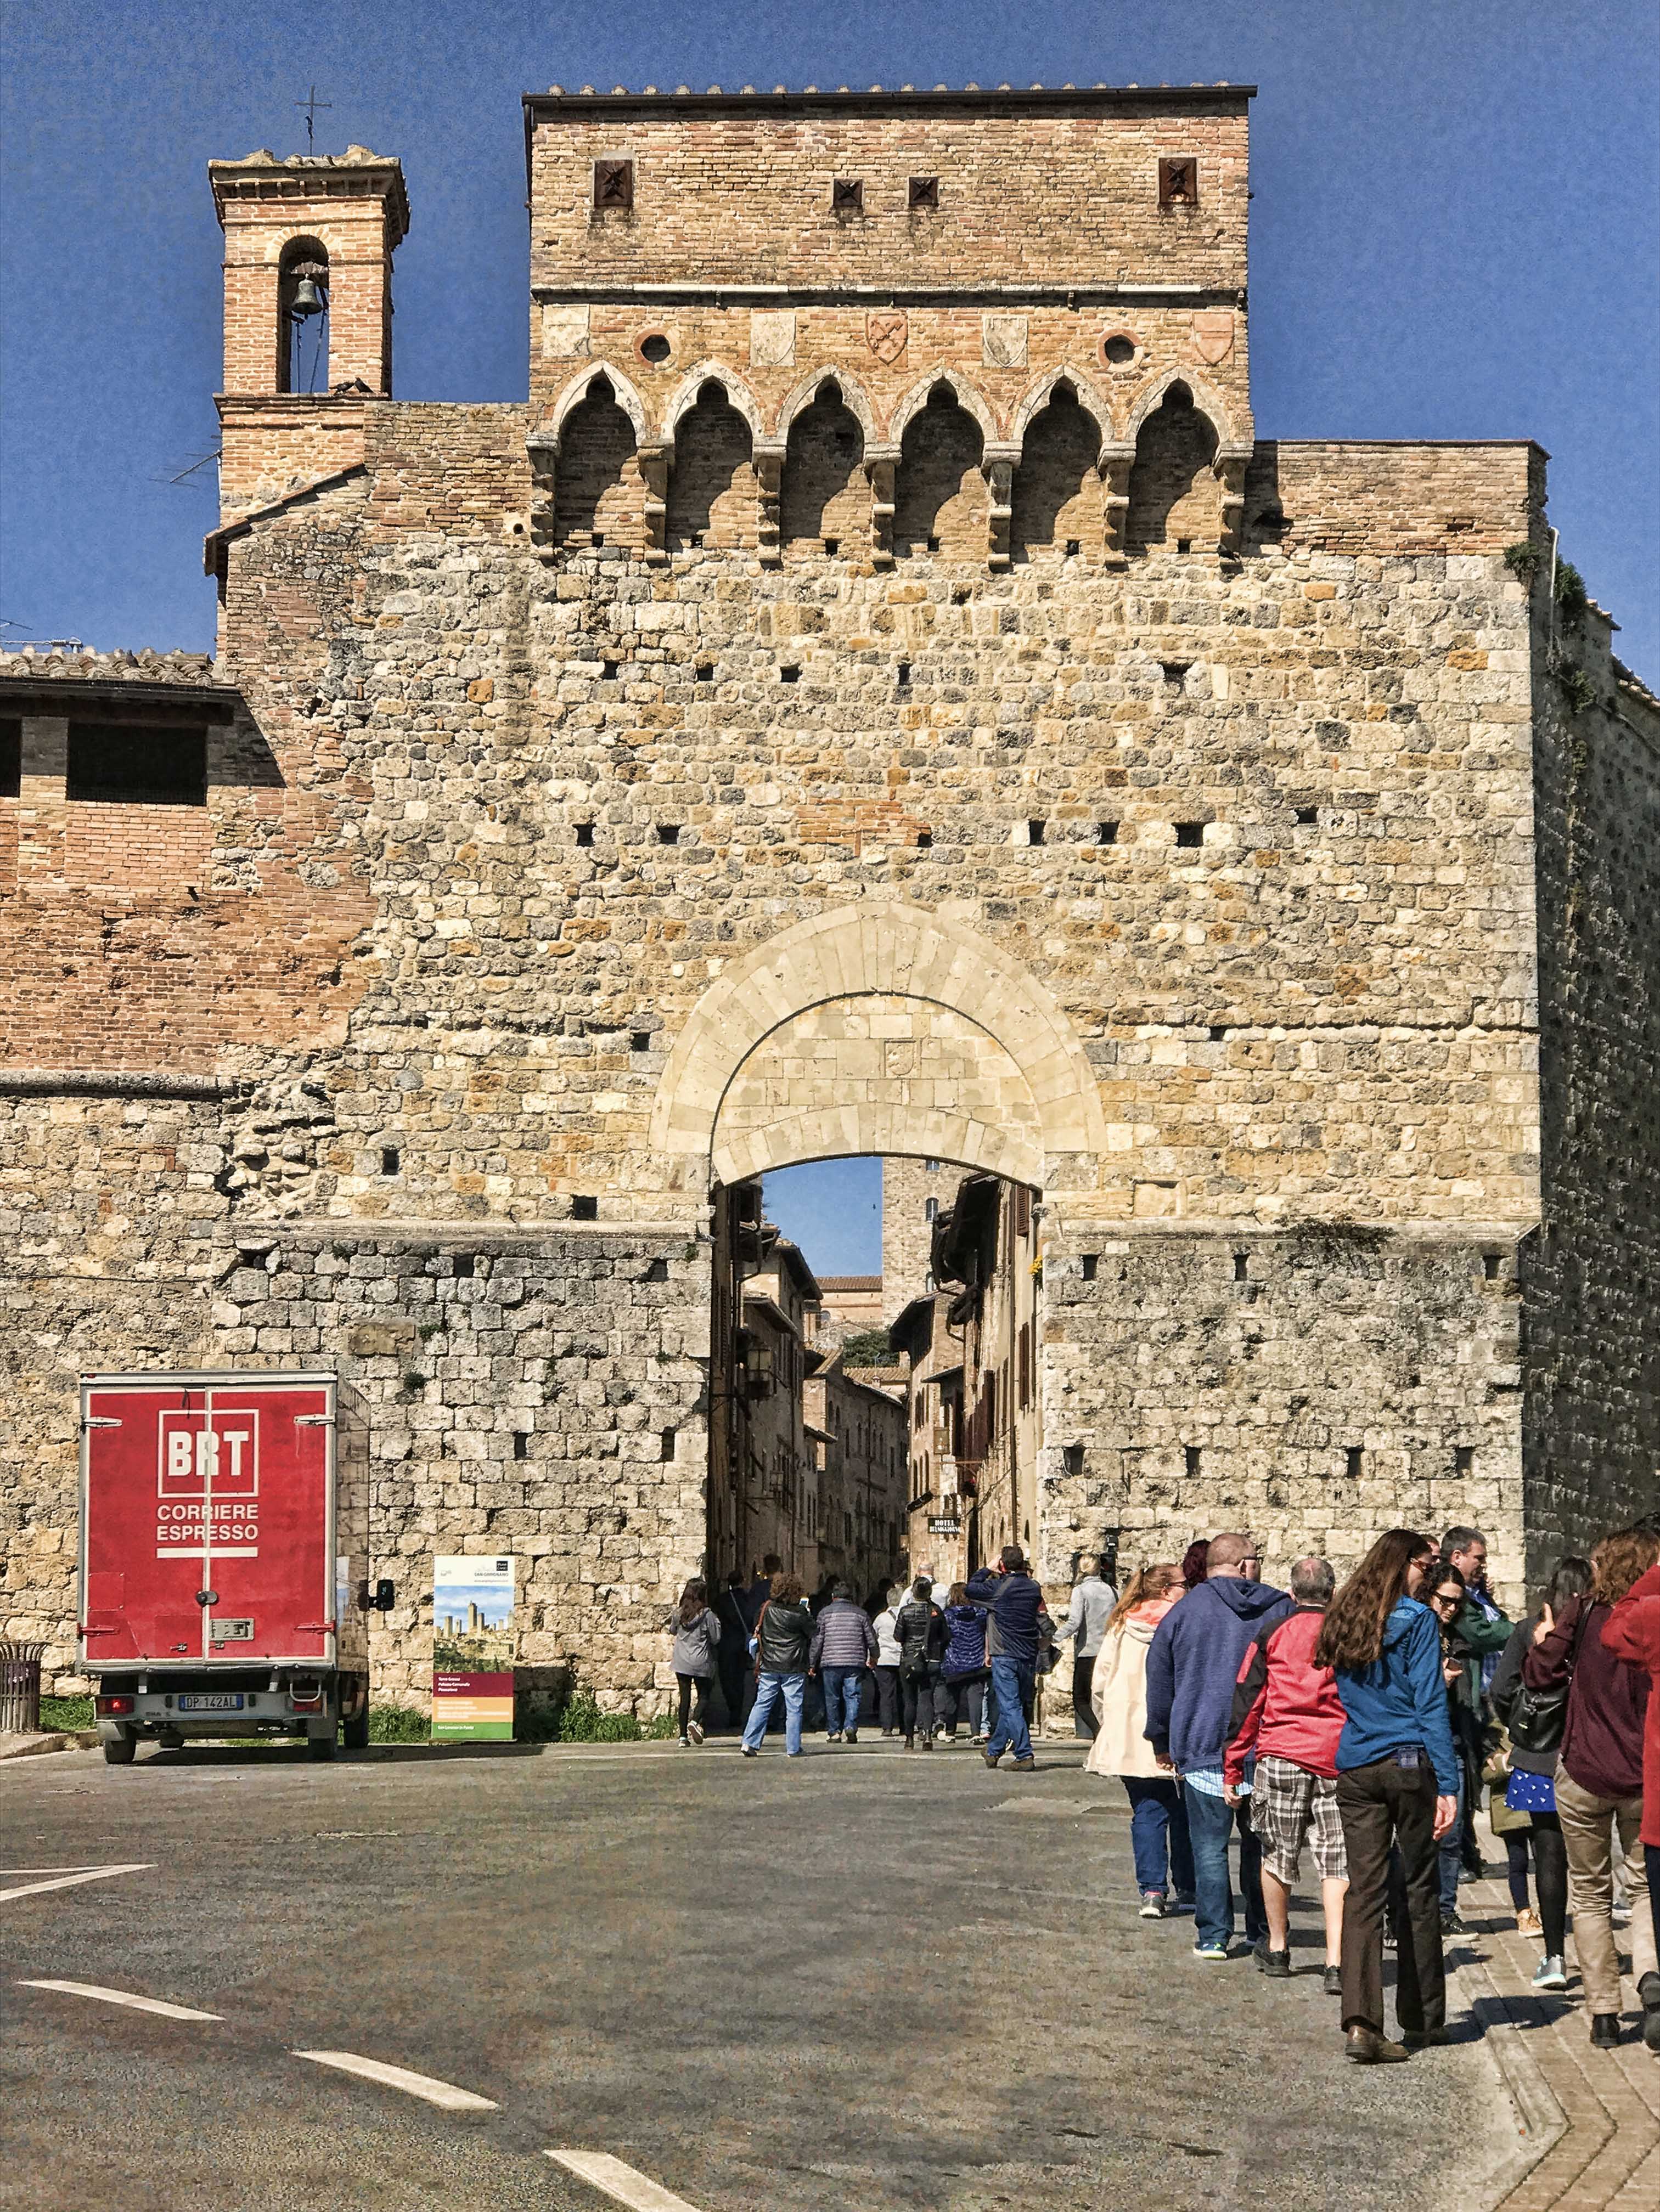 带着这种好感觉，我们上车前往圣吉米尼亚诺（San Gimignano），这是一个城墙环绕的中世纪小城